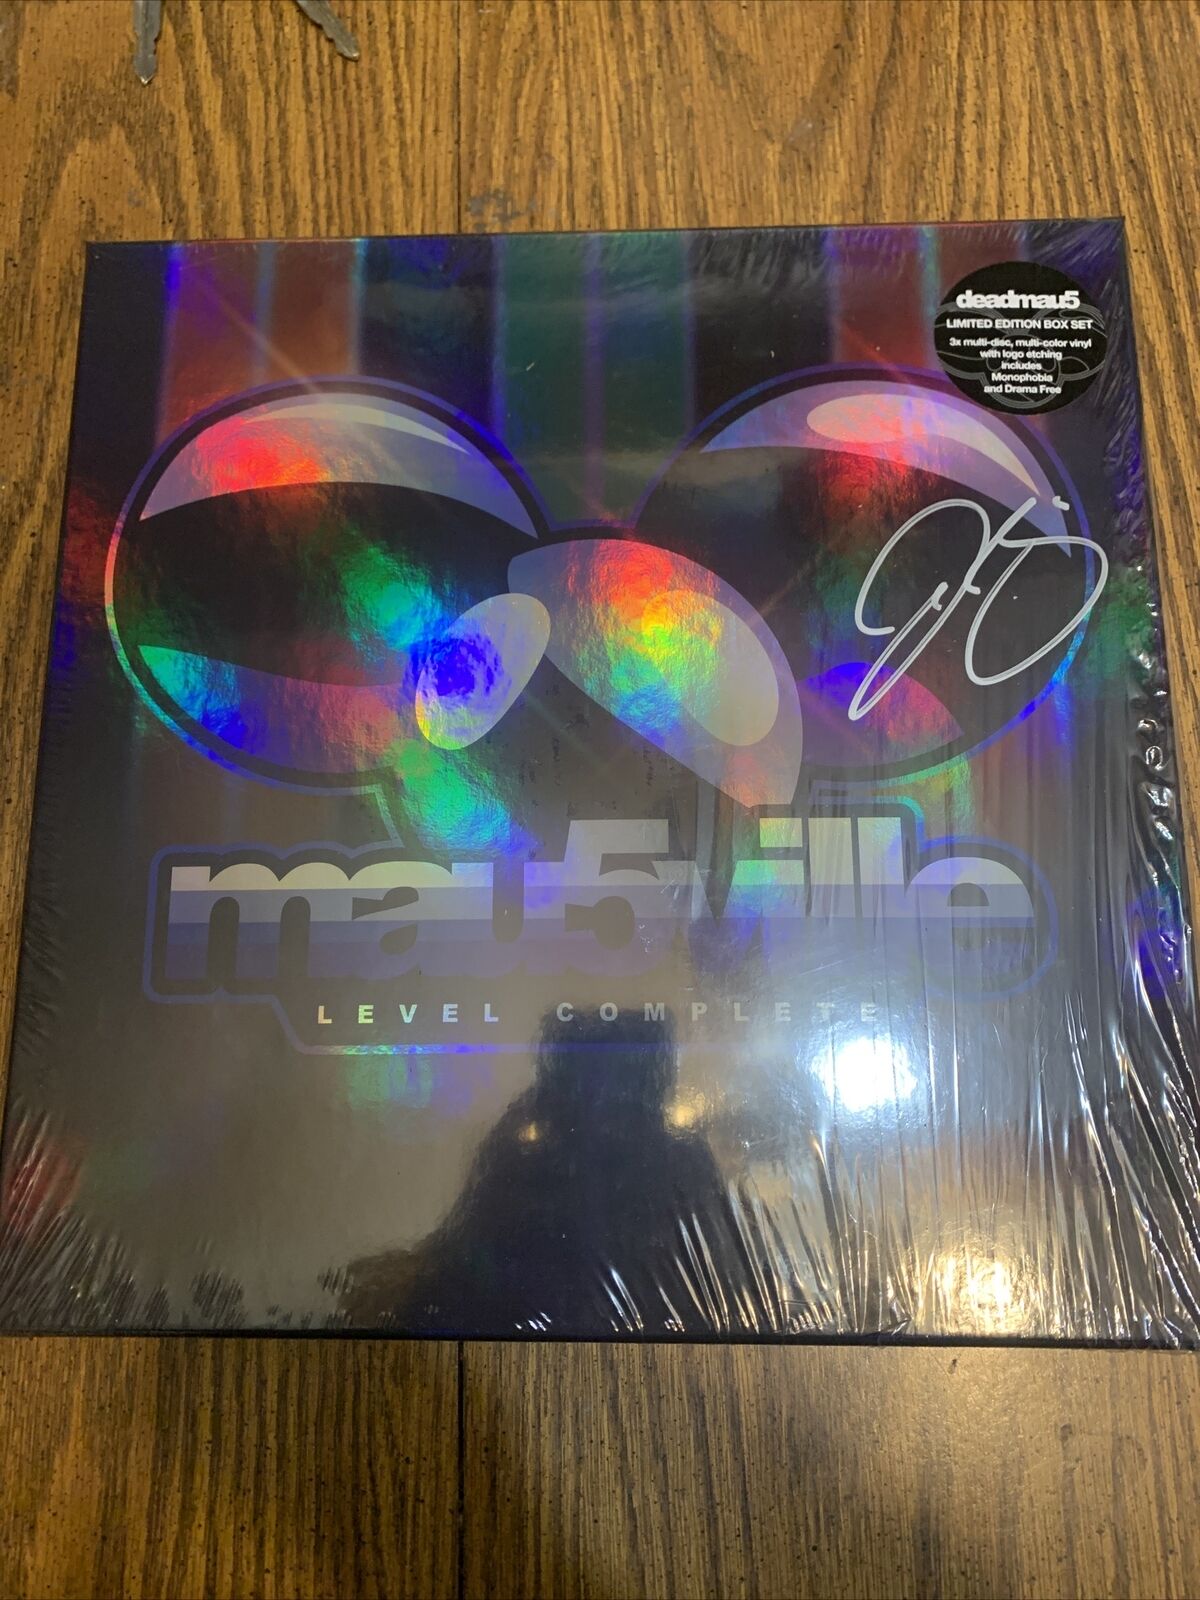 Deadmau5 - Mau5ville Level Complete - 3LP Vinyl Box Set - Autographed - Signed